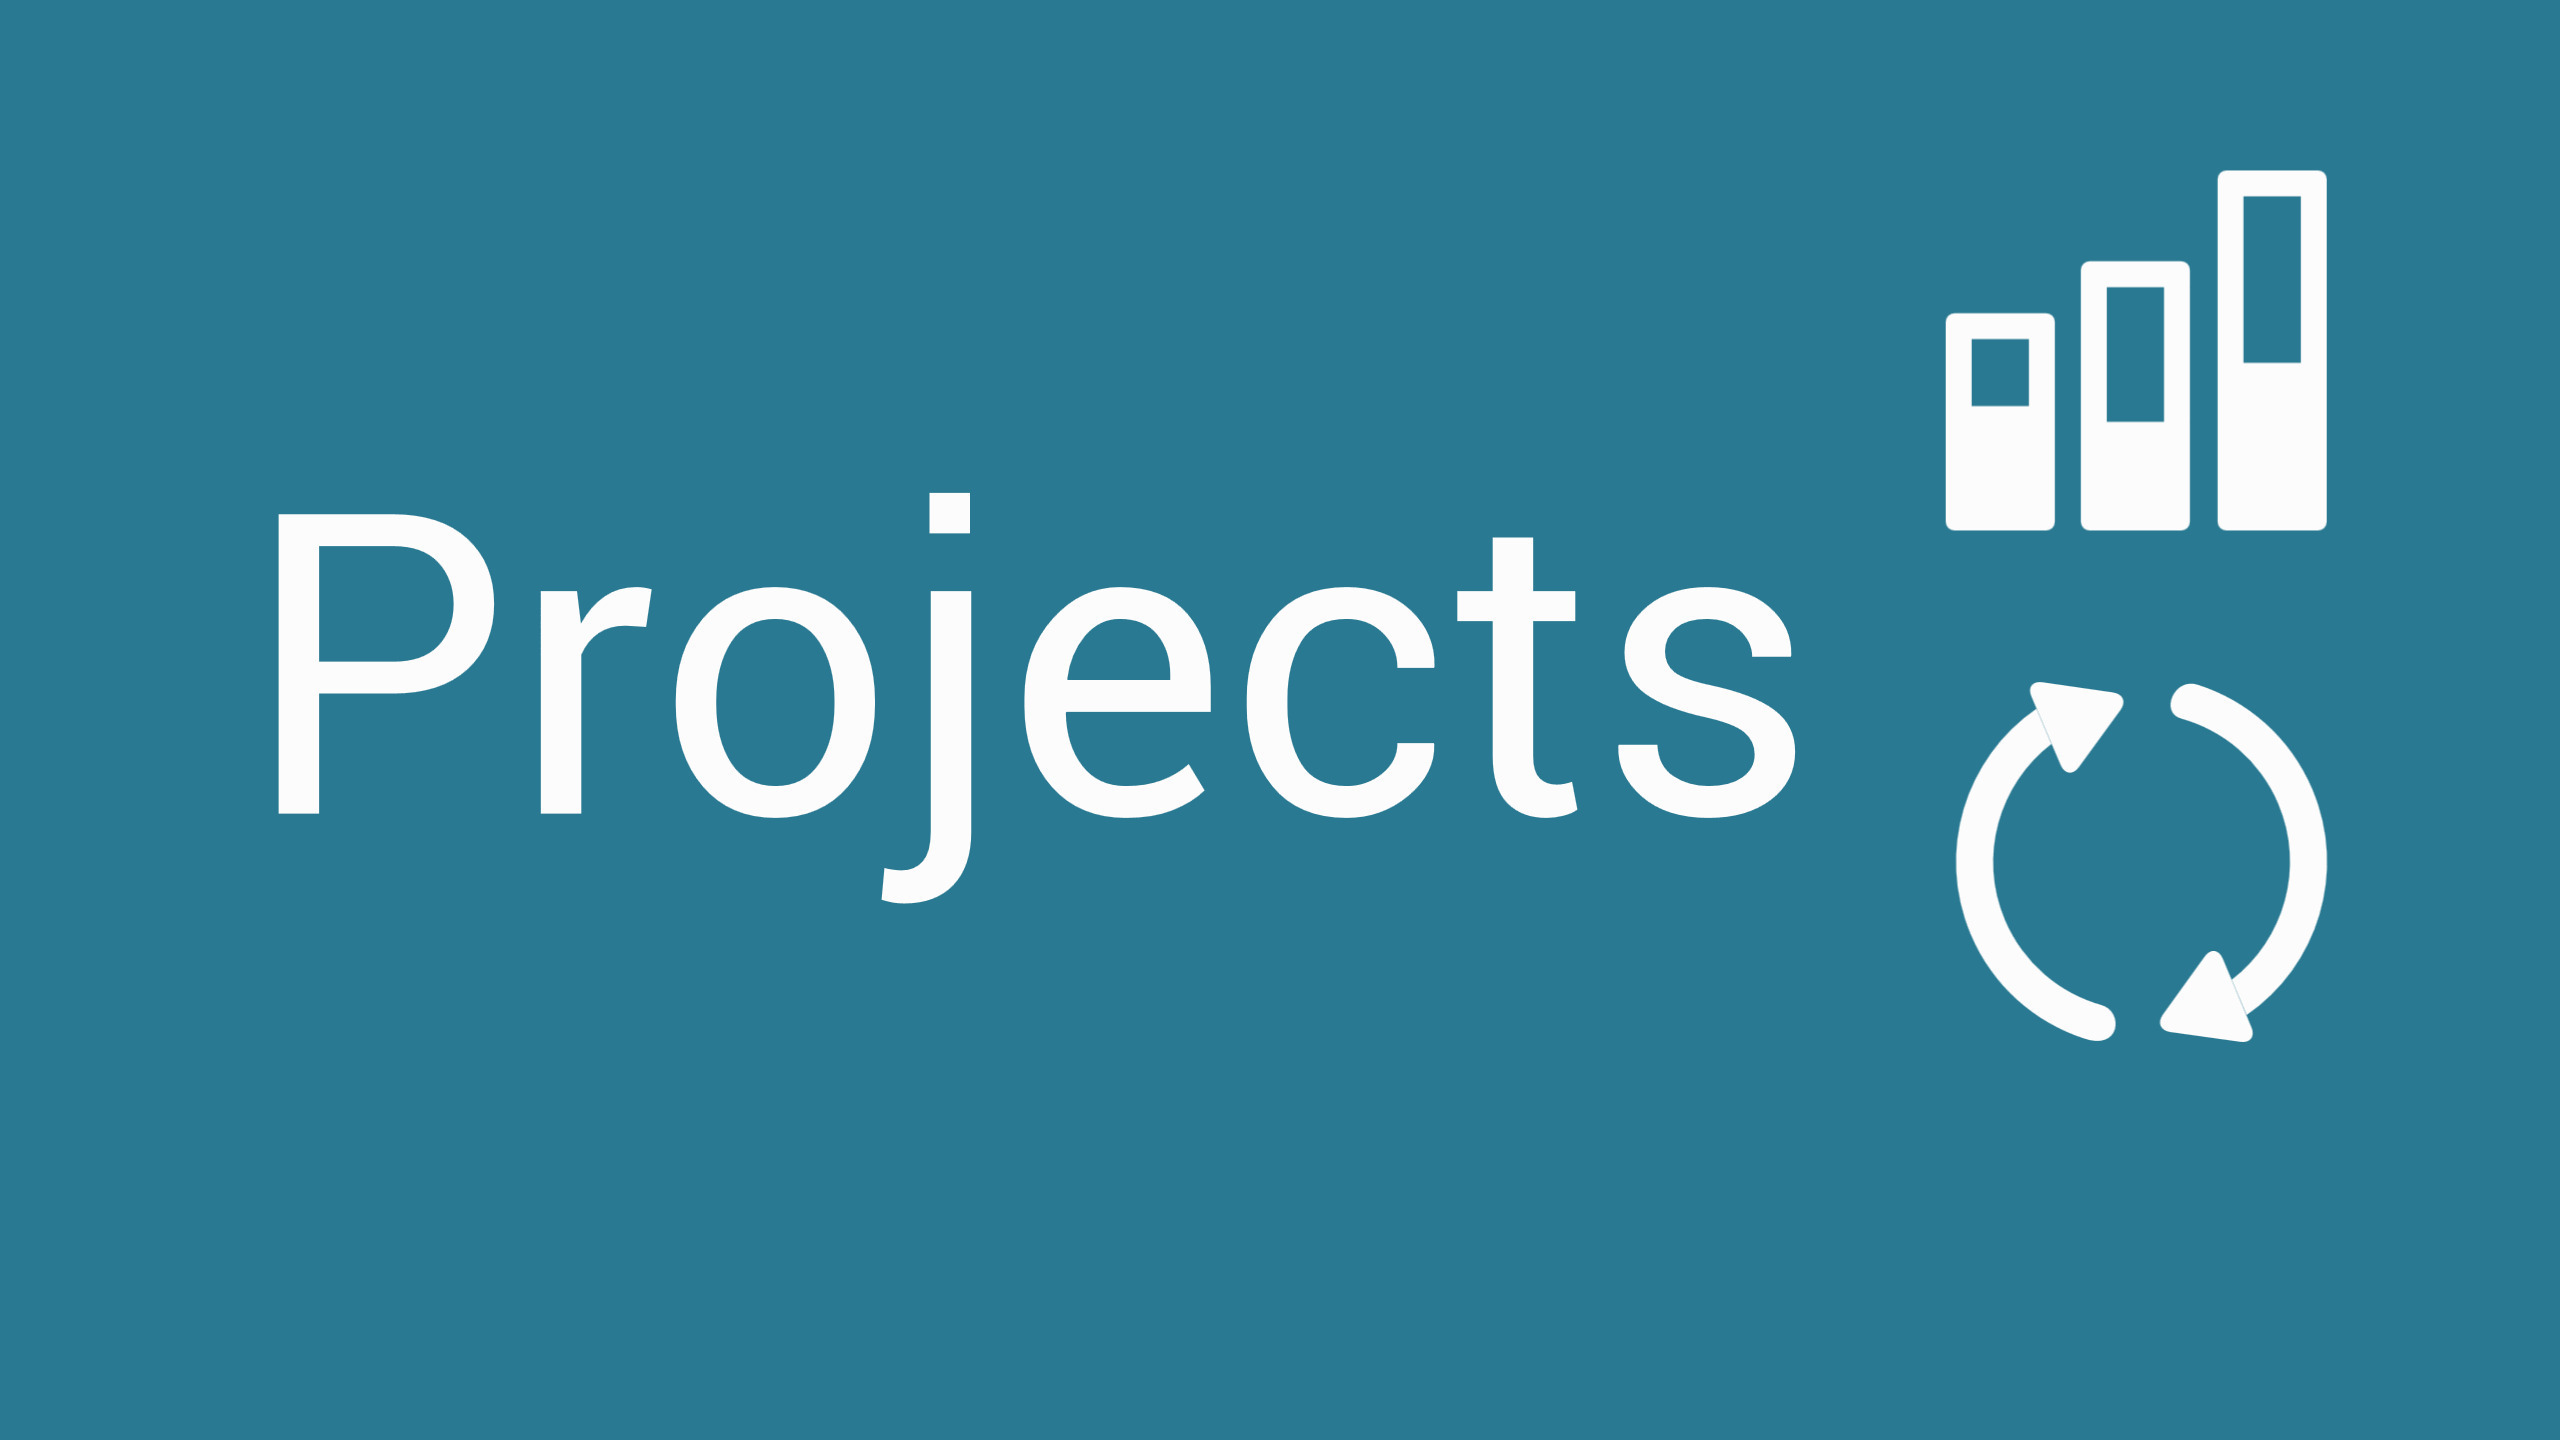 Vorschlag-Menue-Button-Projects